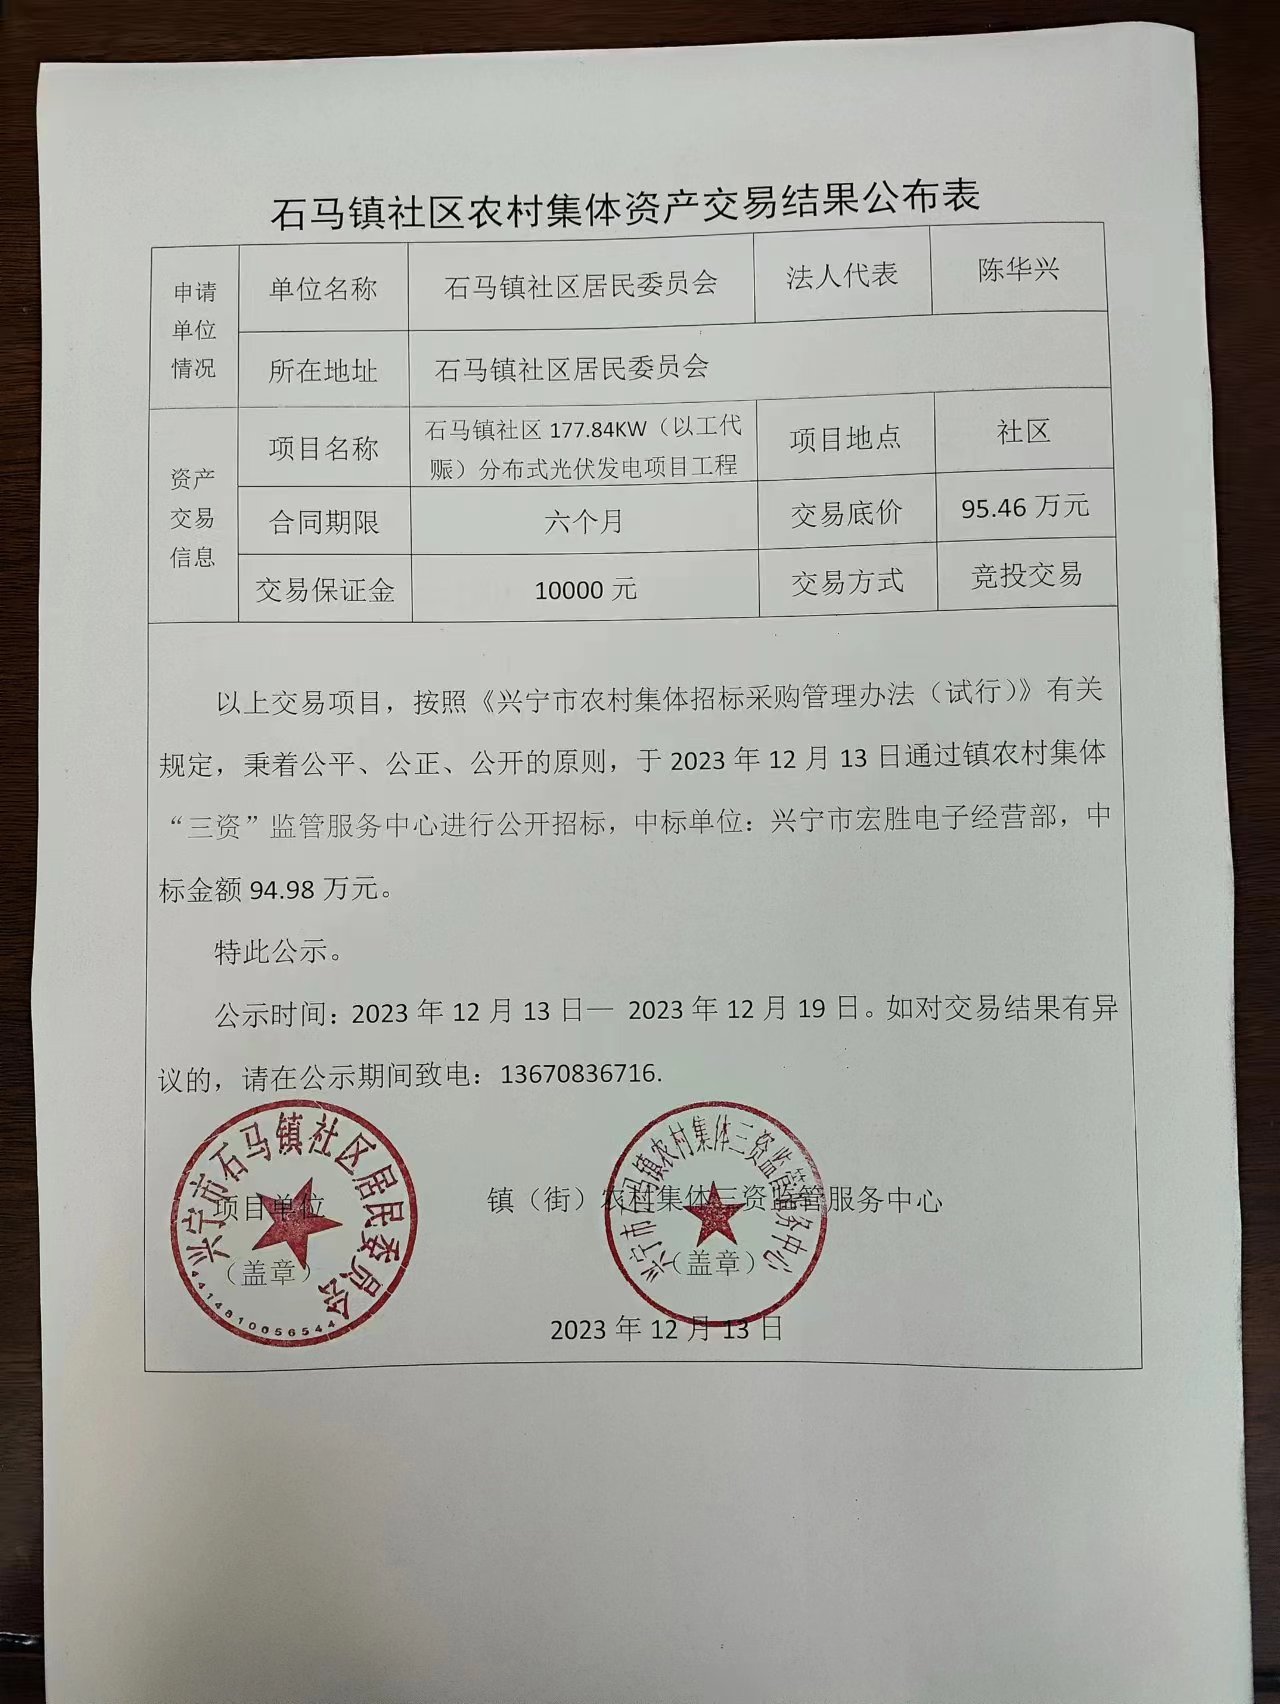 石马镇社区农村集体资产交易结果公布表2023.12.13.jpg